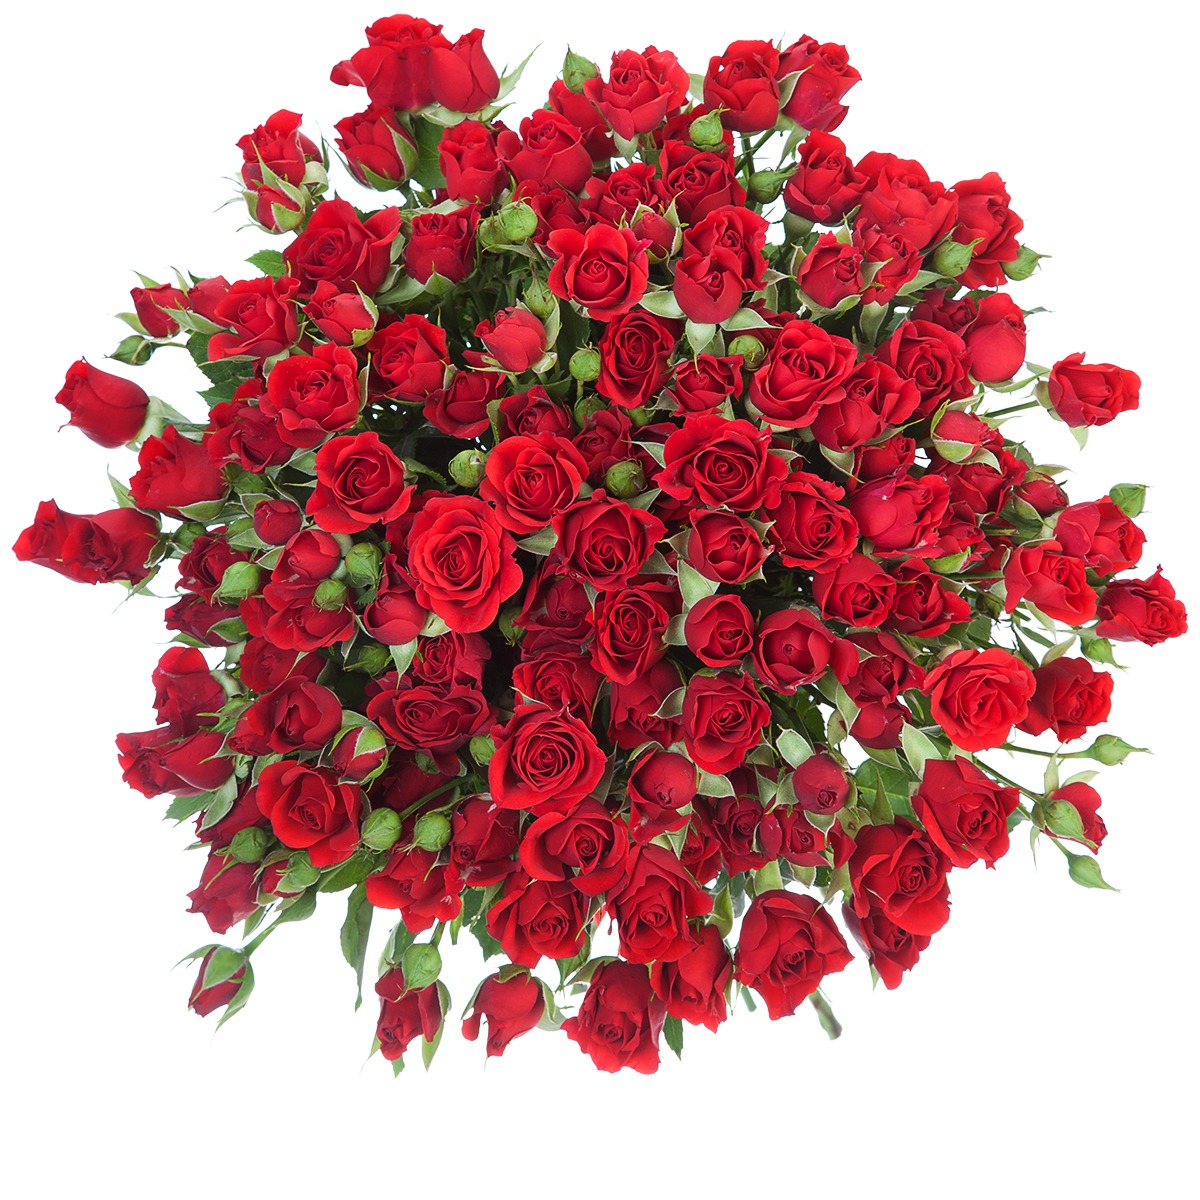 Raudonos smulkiažiedės rožės 2